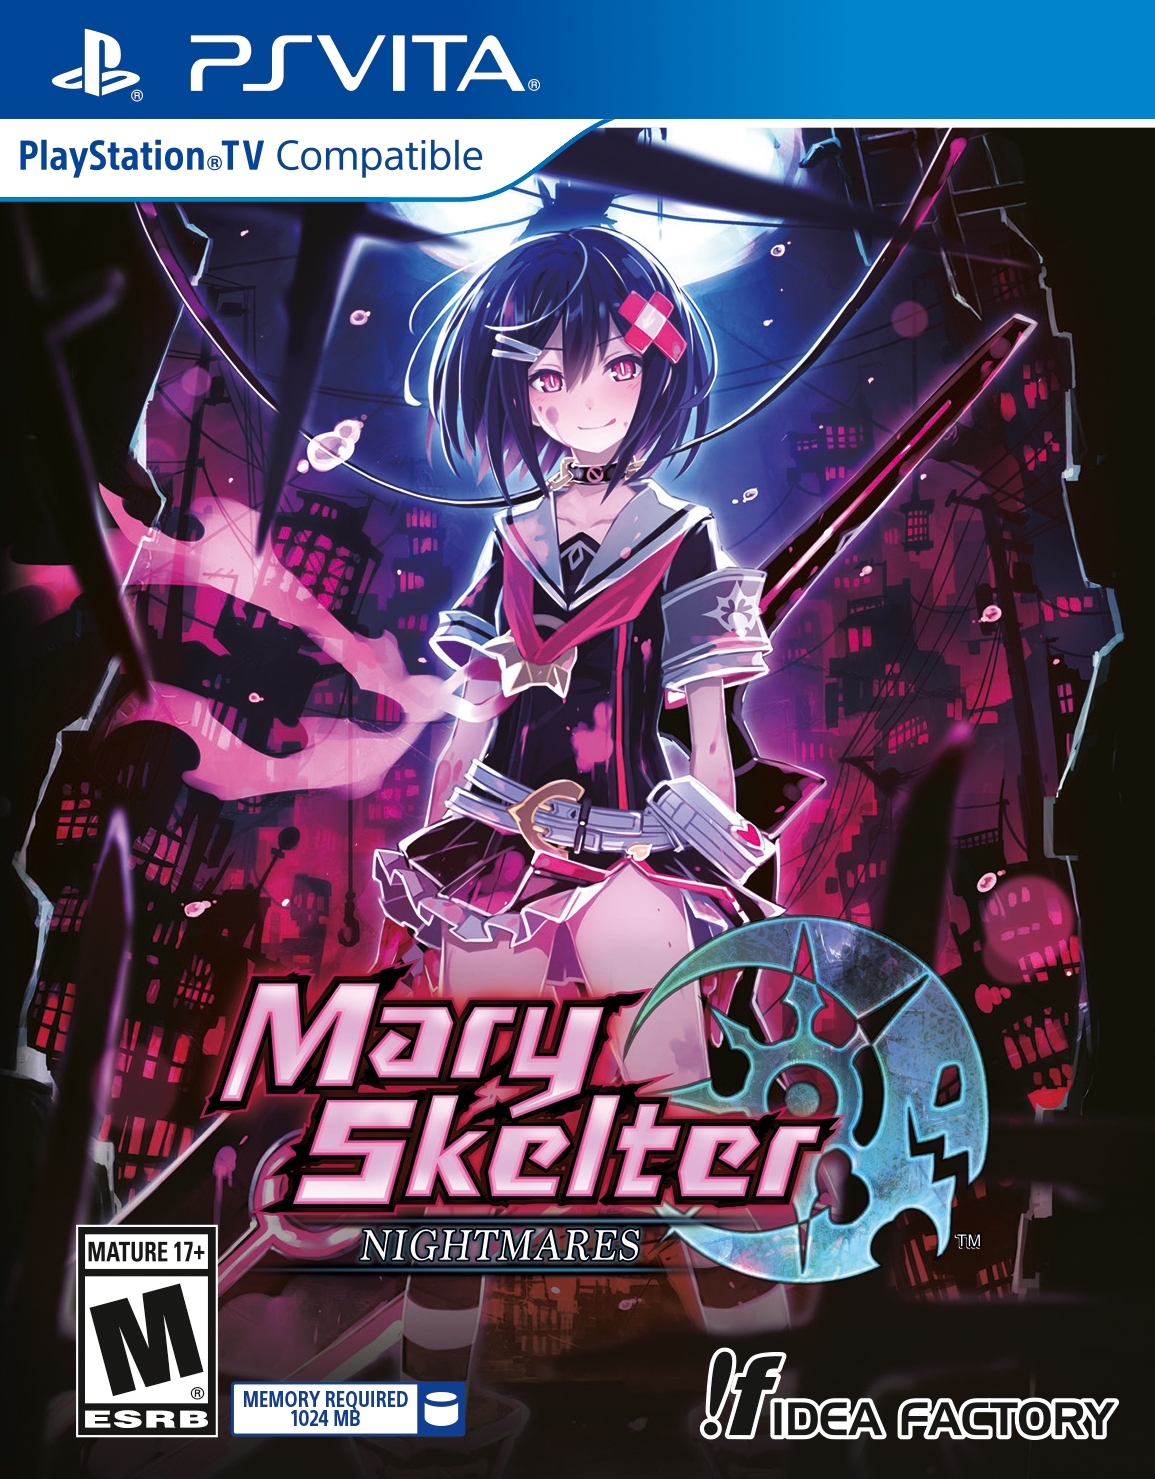 PS Vita RPG Mary Skelter: Nightmares v obchodech už po prázdninách 147942